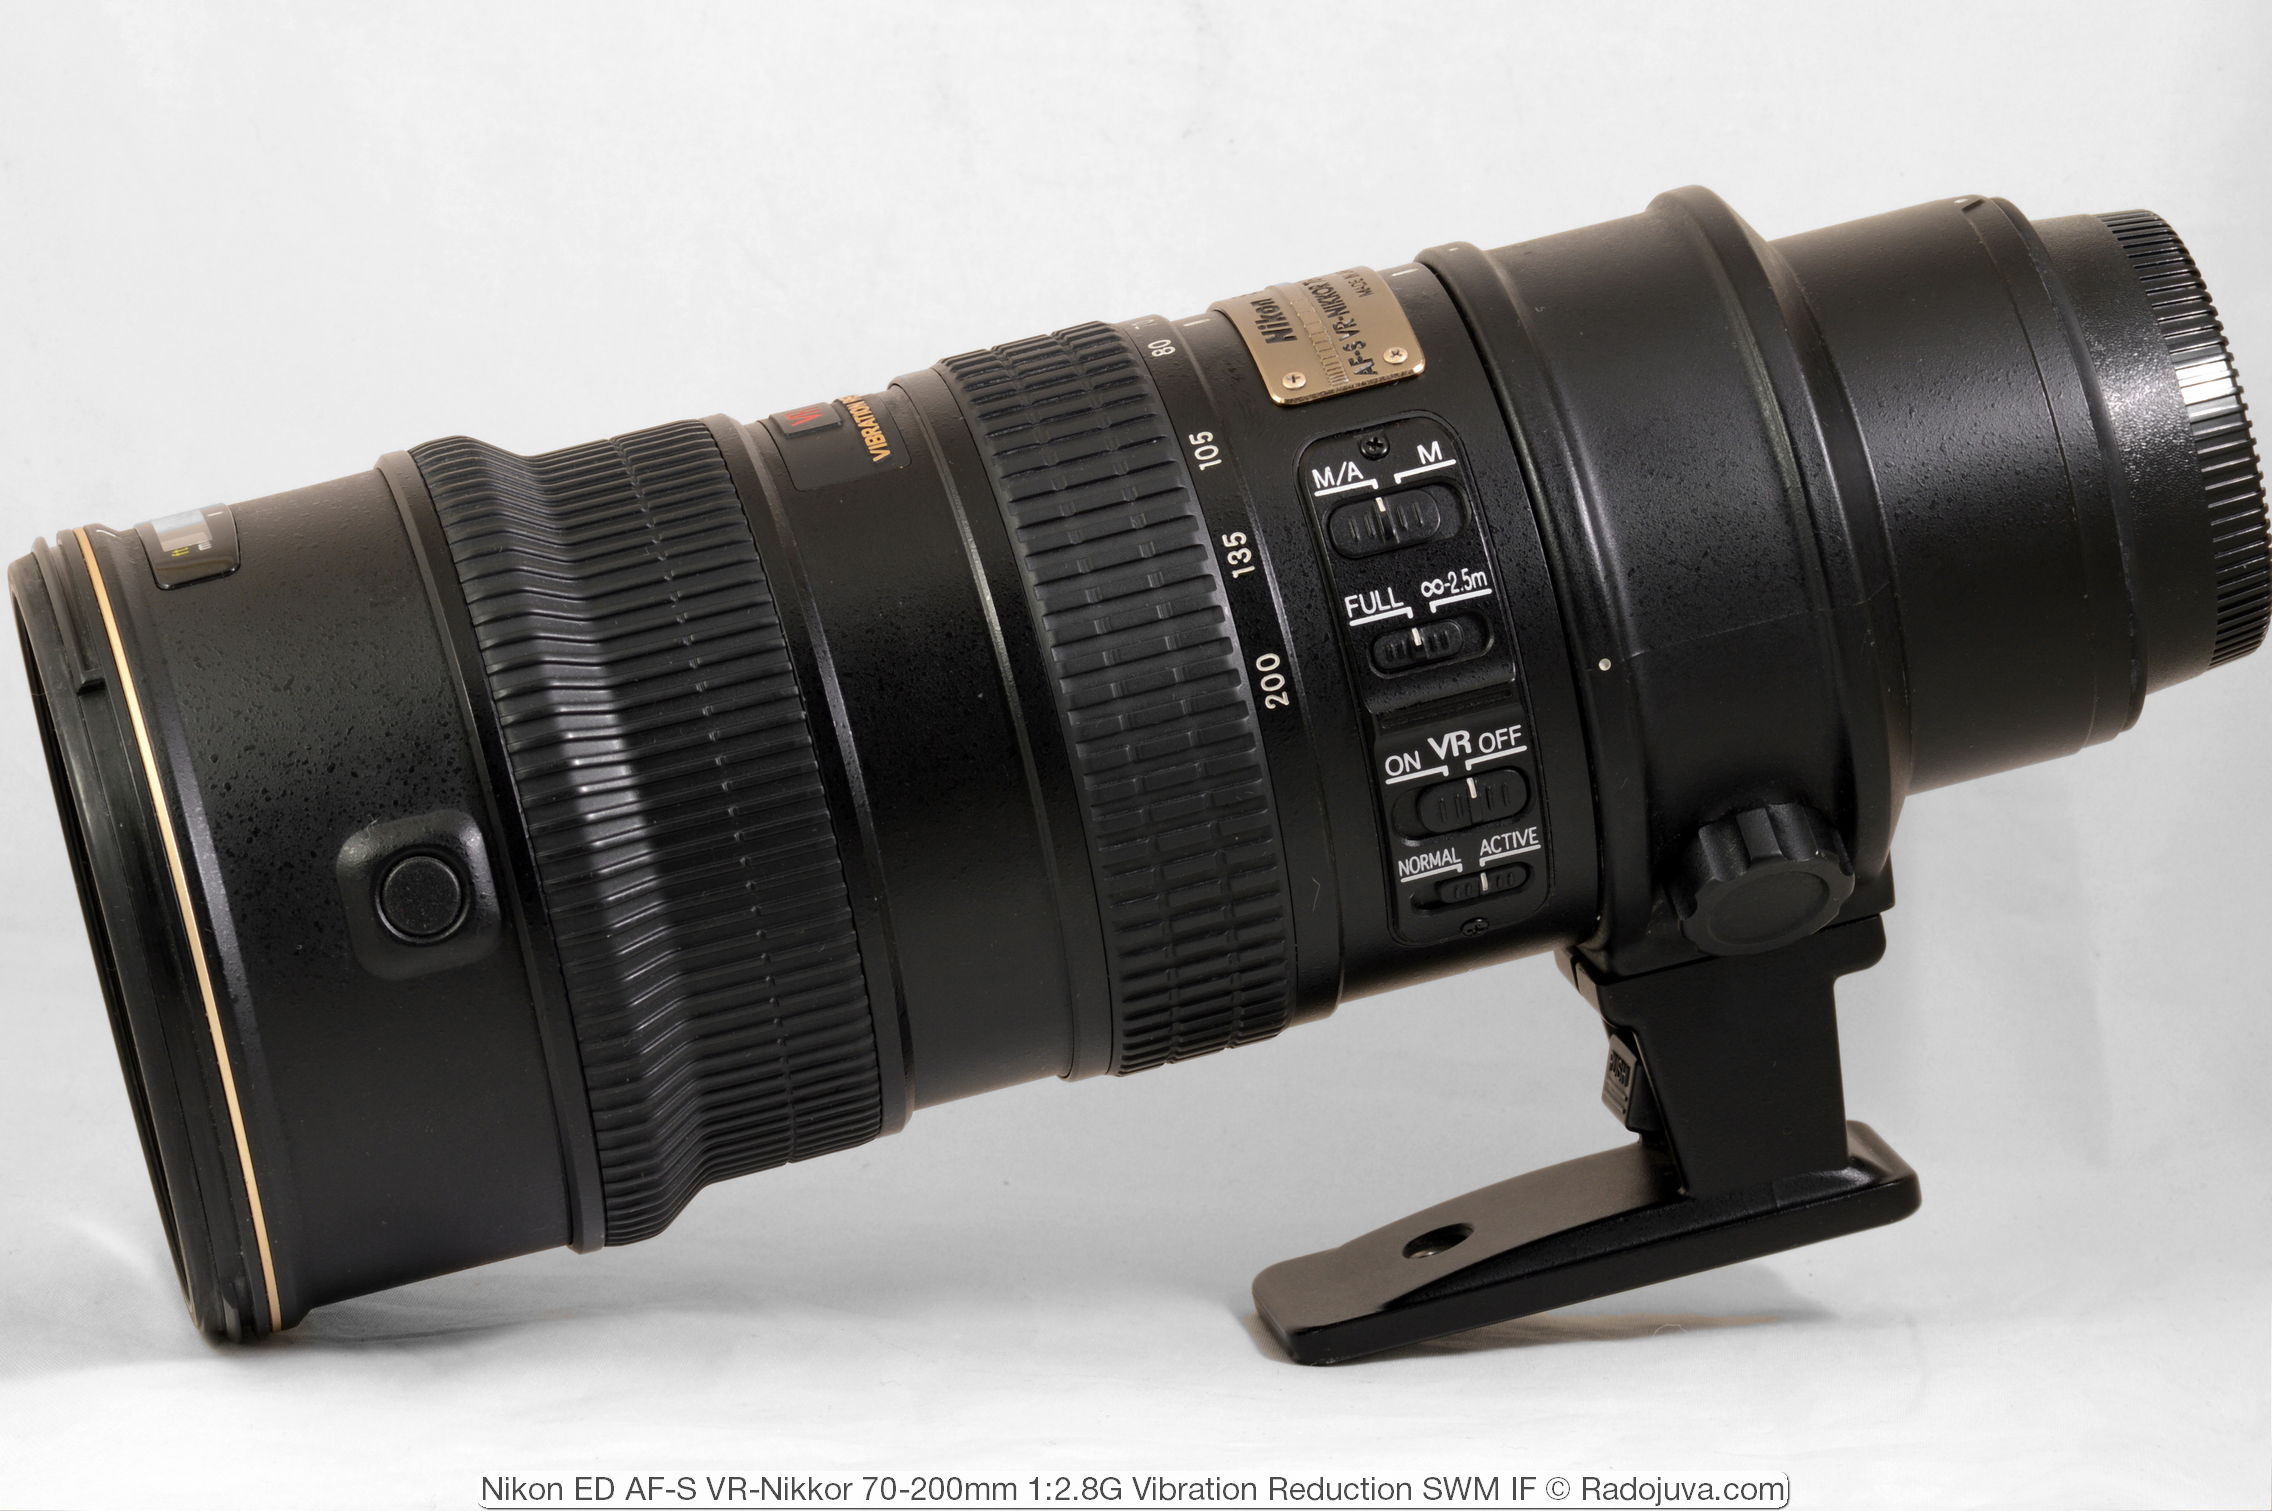 Review of Nikon ED AF-S VR-Nikkor 70-200mm 1: 2.8G (VR1